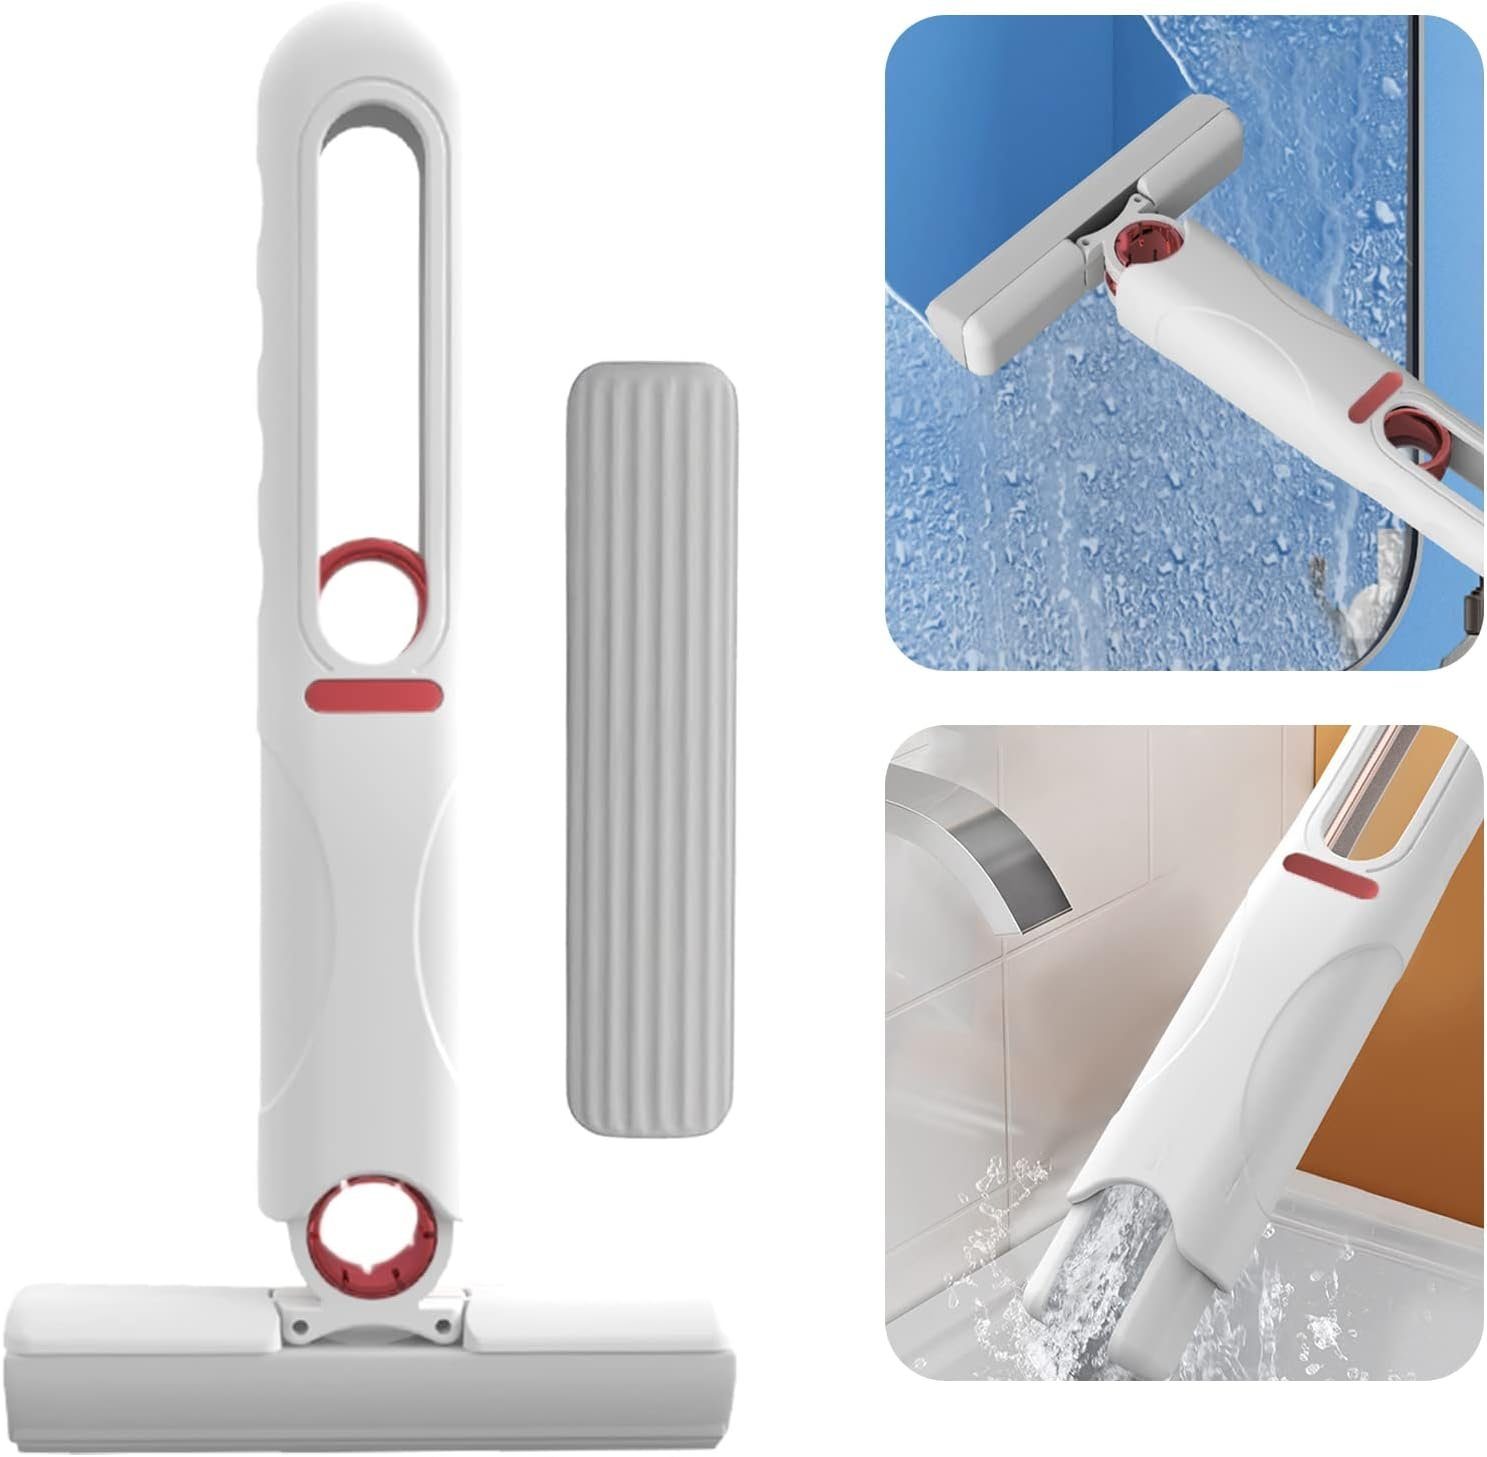 Haiaveng Wischmopp Wischmopp Mini-Mopp,Tragbar Selbstpressung Wasser Wischer Mop, Desktop Wasser Mop,mit 1 Moppkopf